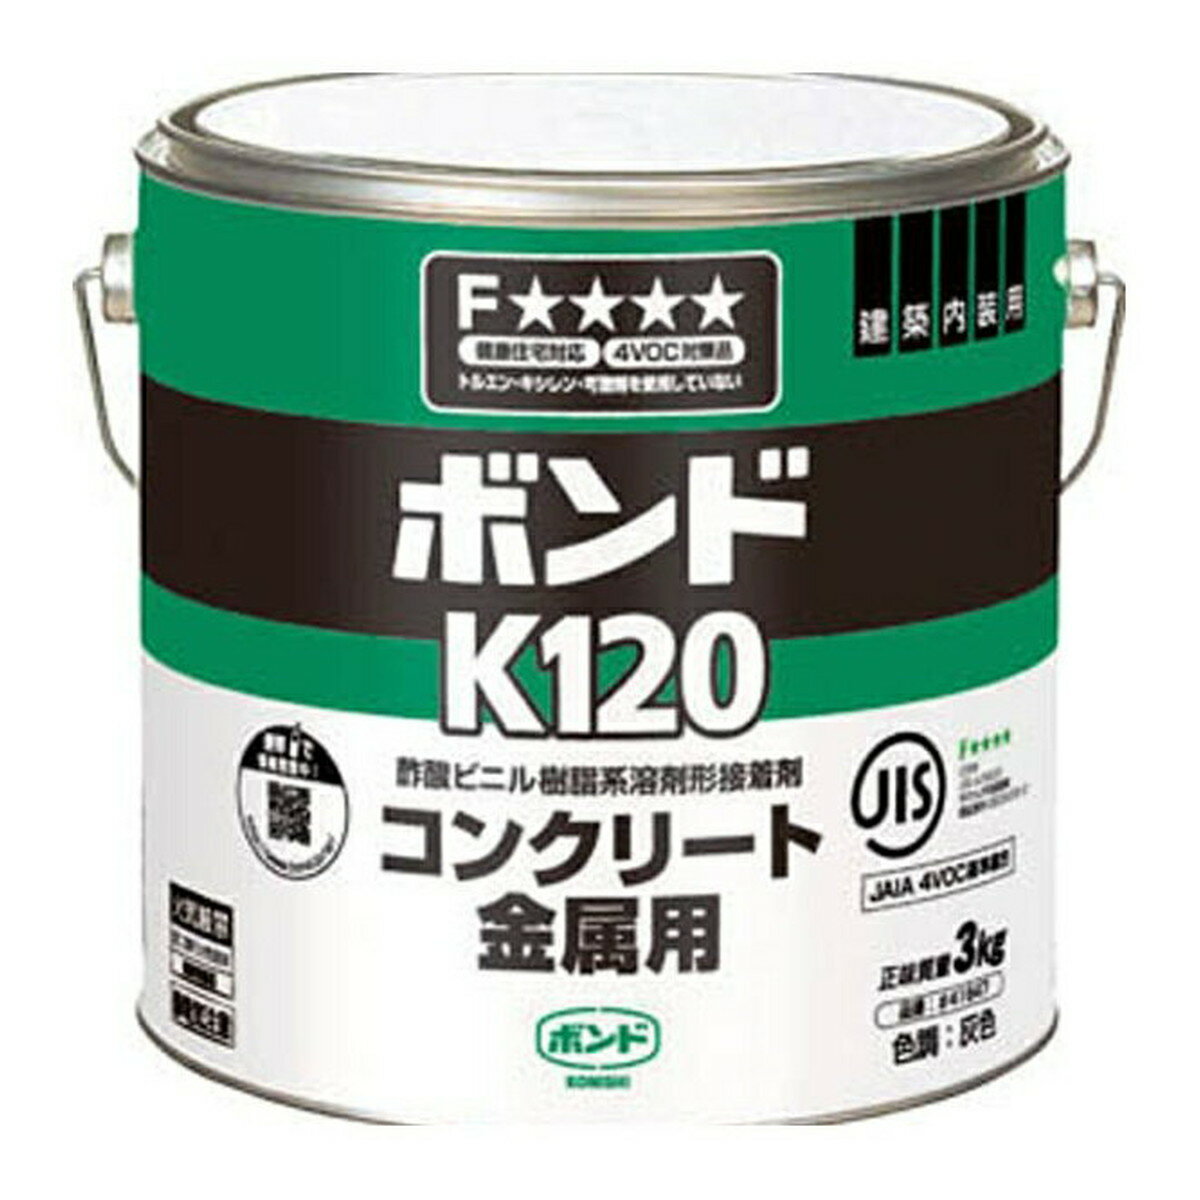 【送料込・まとめ買い×4個セット】コニシ ボンド K120 コンクリート金属用 3kg 缶